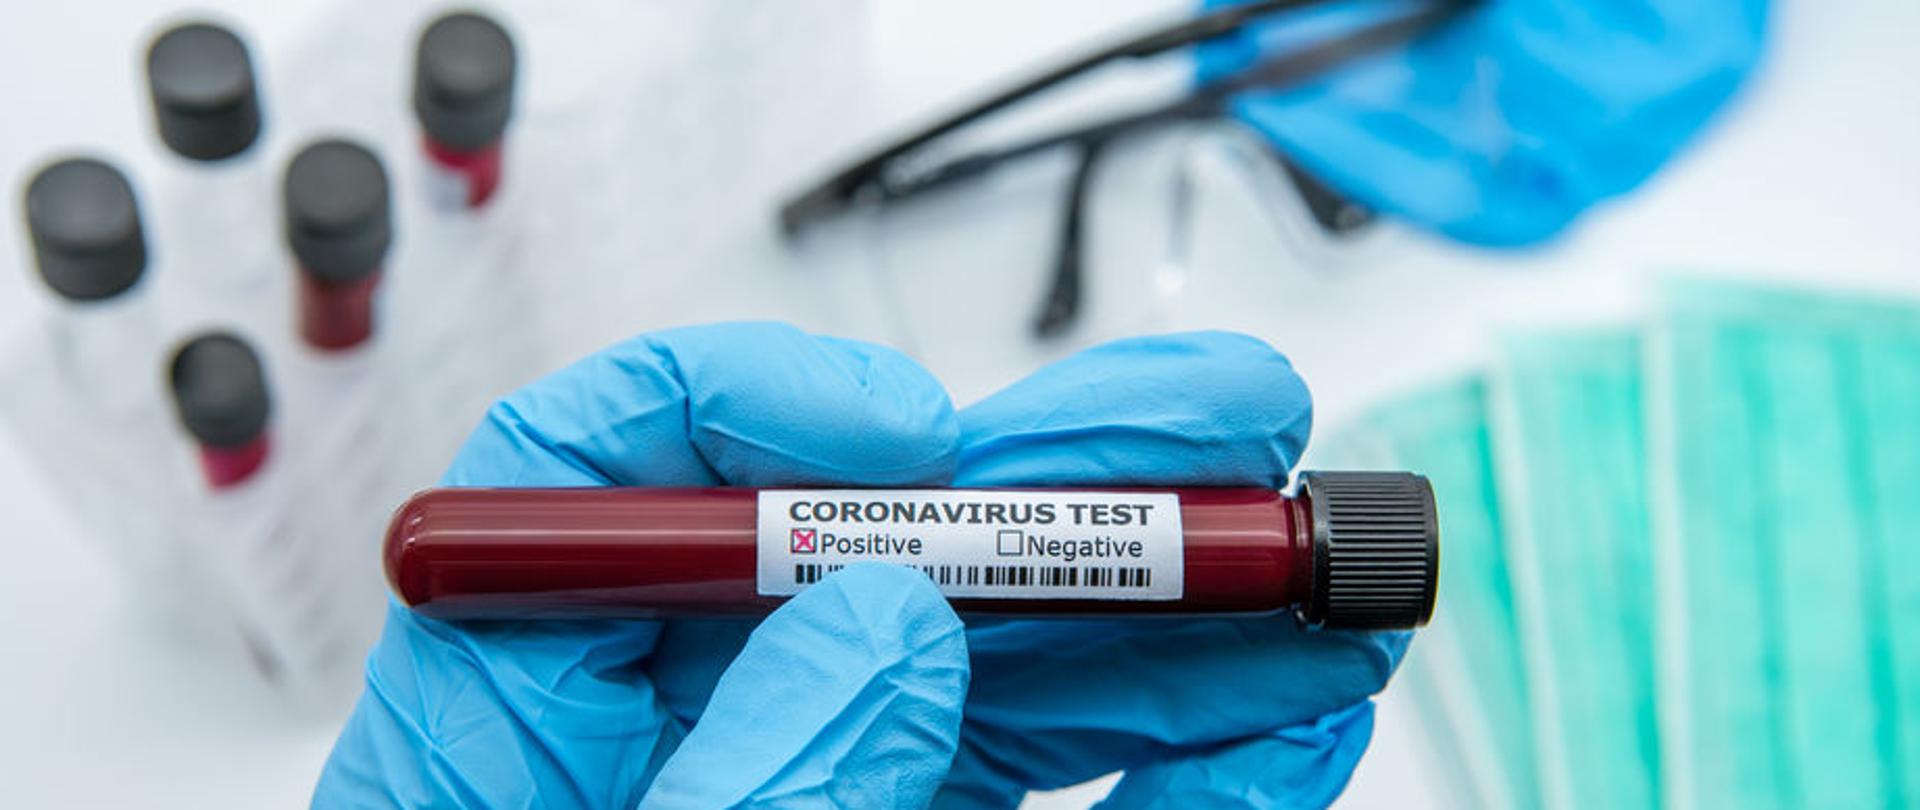 koronawirus, covid-19, test pozytywny